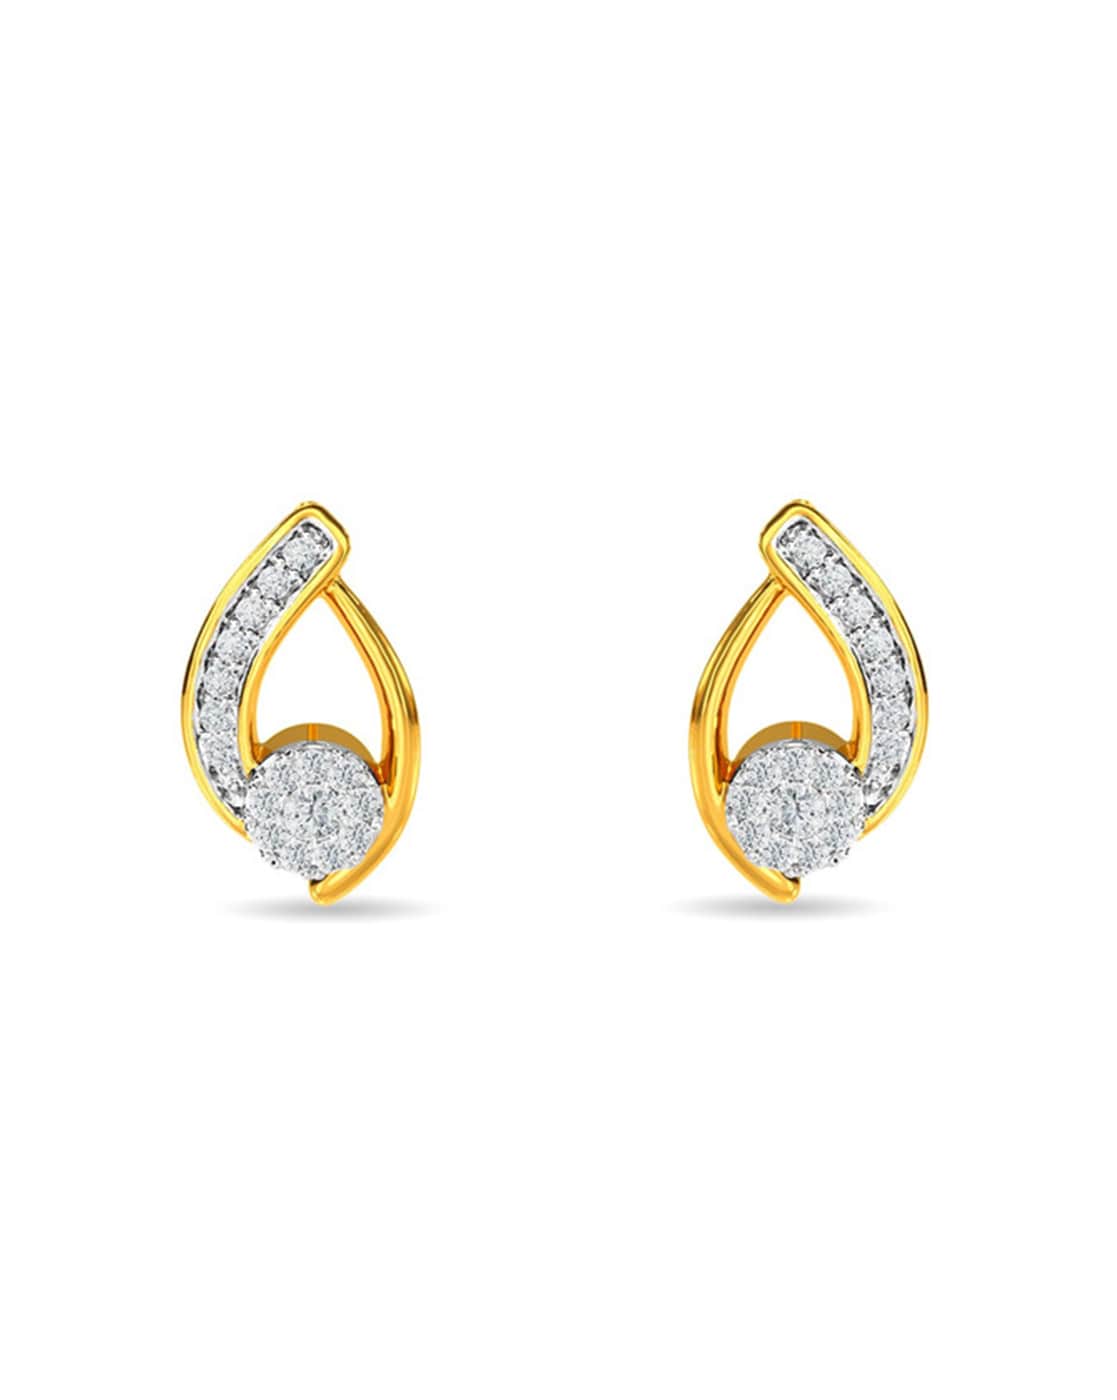 Yunli Real 18k Gold Diamond Heart Stud Earrings Mini Simple Natural Diamond  Earrings Pure Au750 Fine Jewelry Gifts For Women - Stud Earrings -  AliExpress